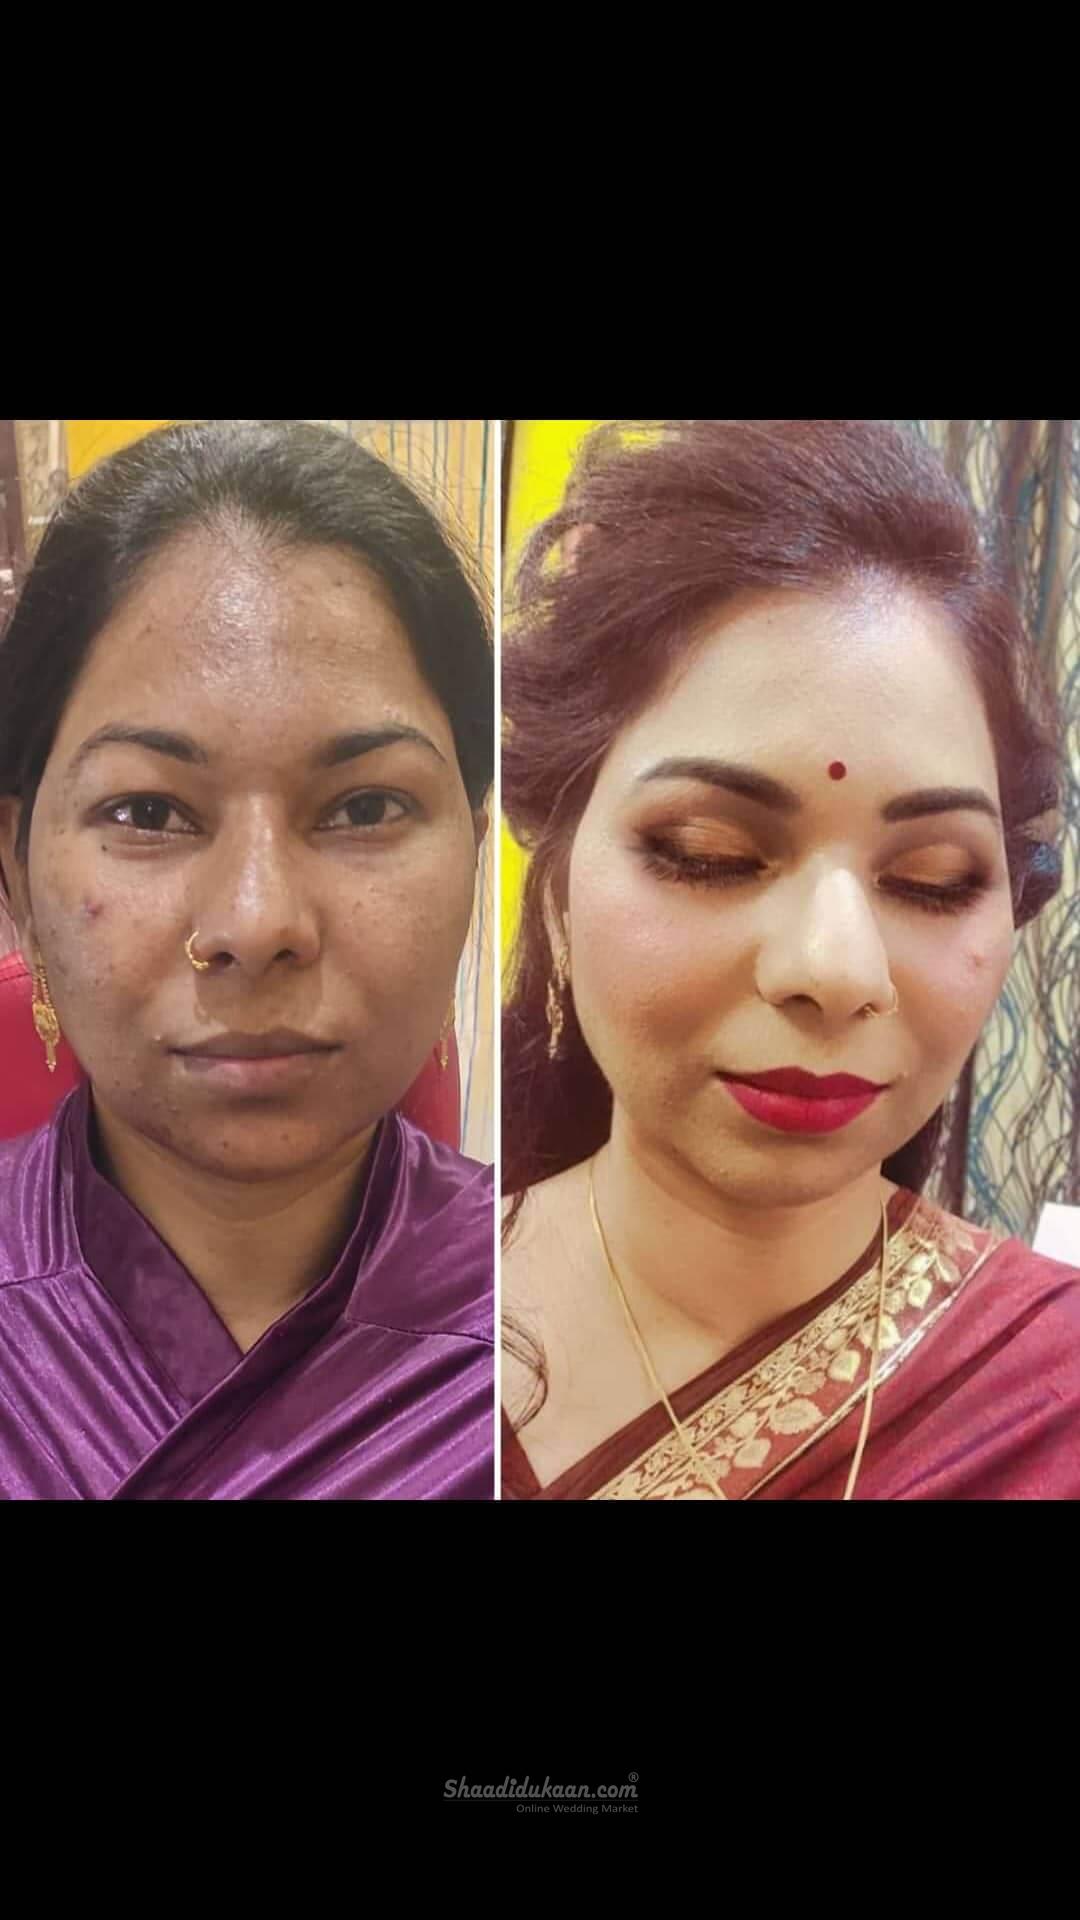 Beauty service nd makeup artist